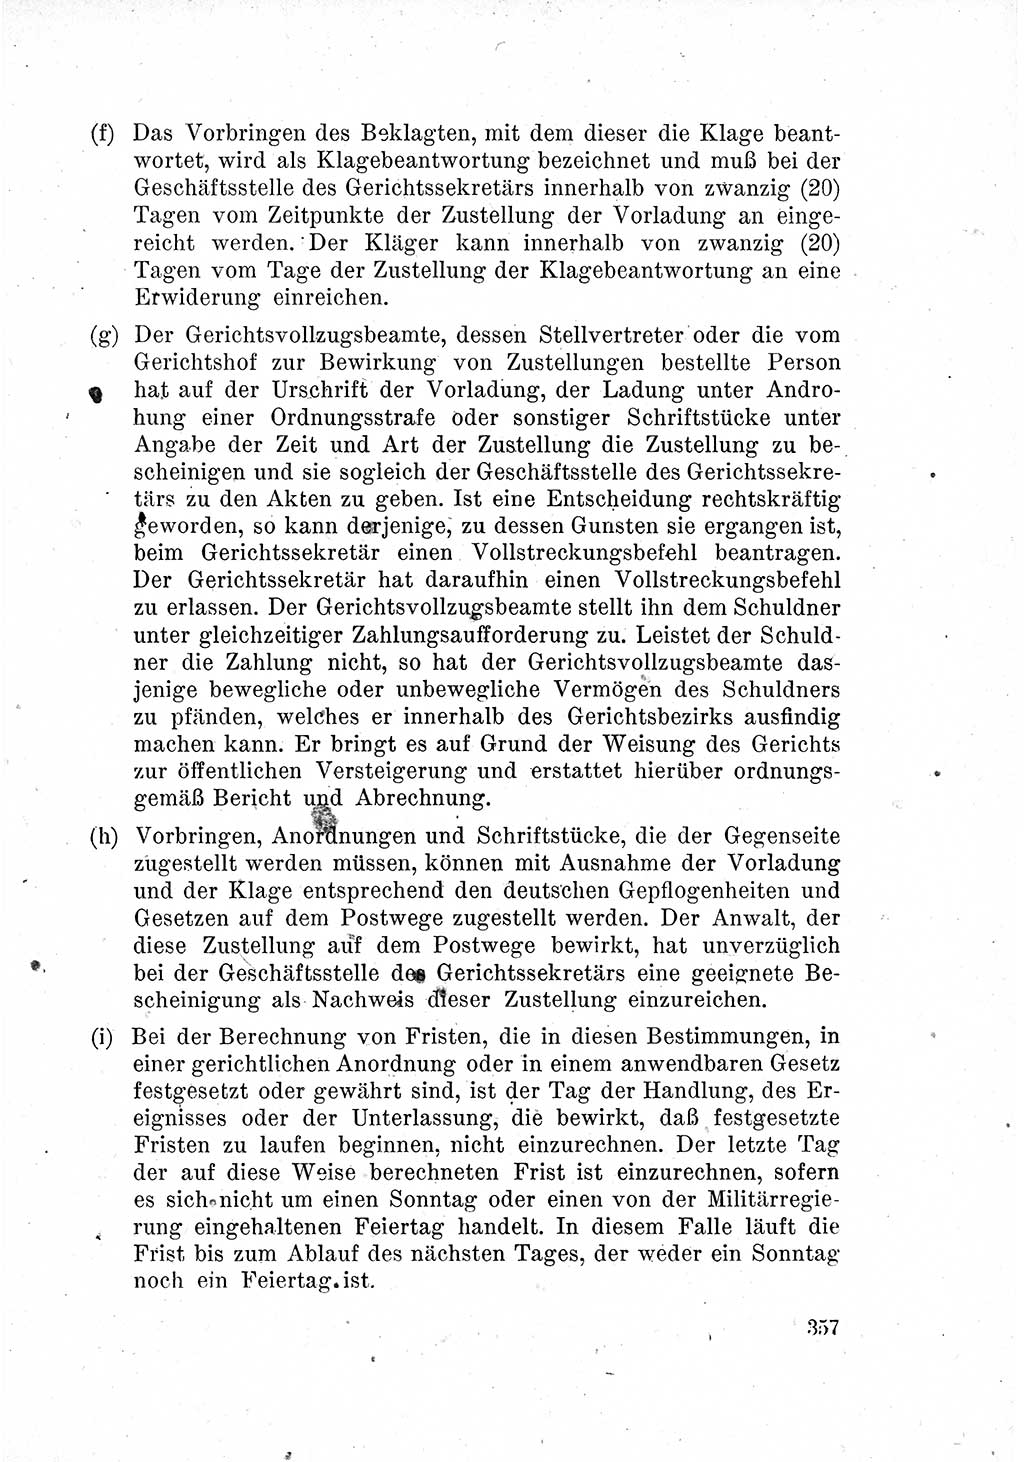 Das Recht der Besatzungsmacht (Deutschland), Proklamationen, Deklerationen, Verordnungen, Gesetze und Bekanntmachungen 1947, Seite 357 (R. Bes. Dtl. 1947, S. 357)